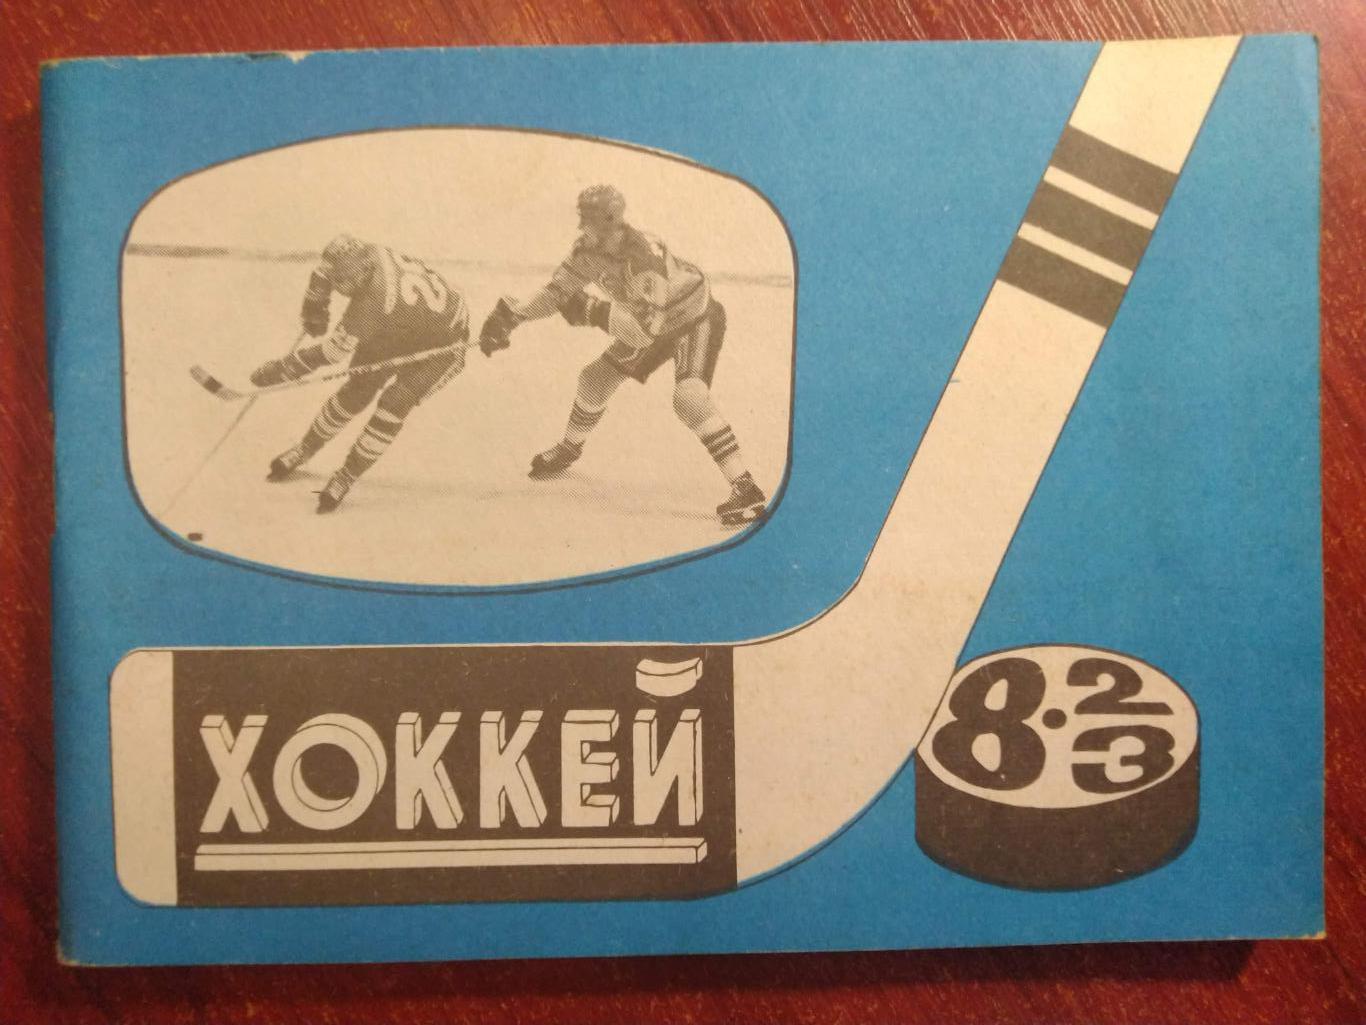 Хоккей Календарь-справочник 1982-83 Москва издательство Московская правда